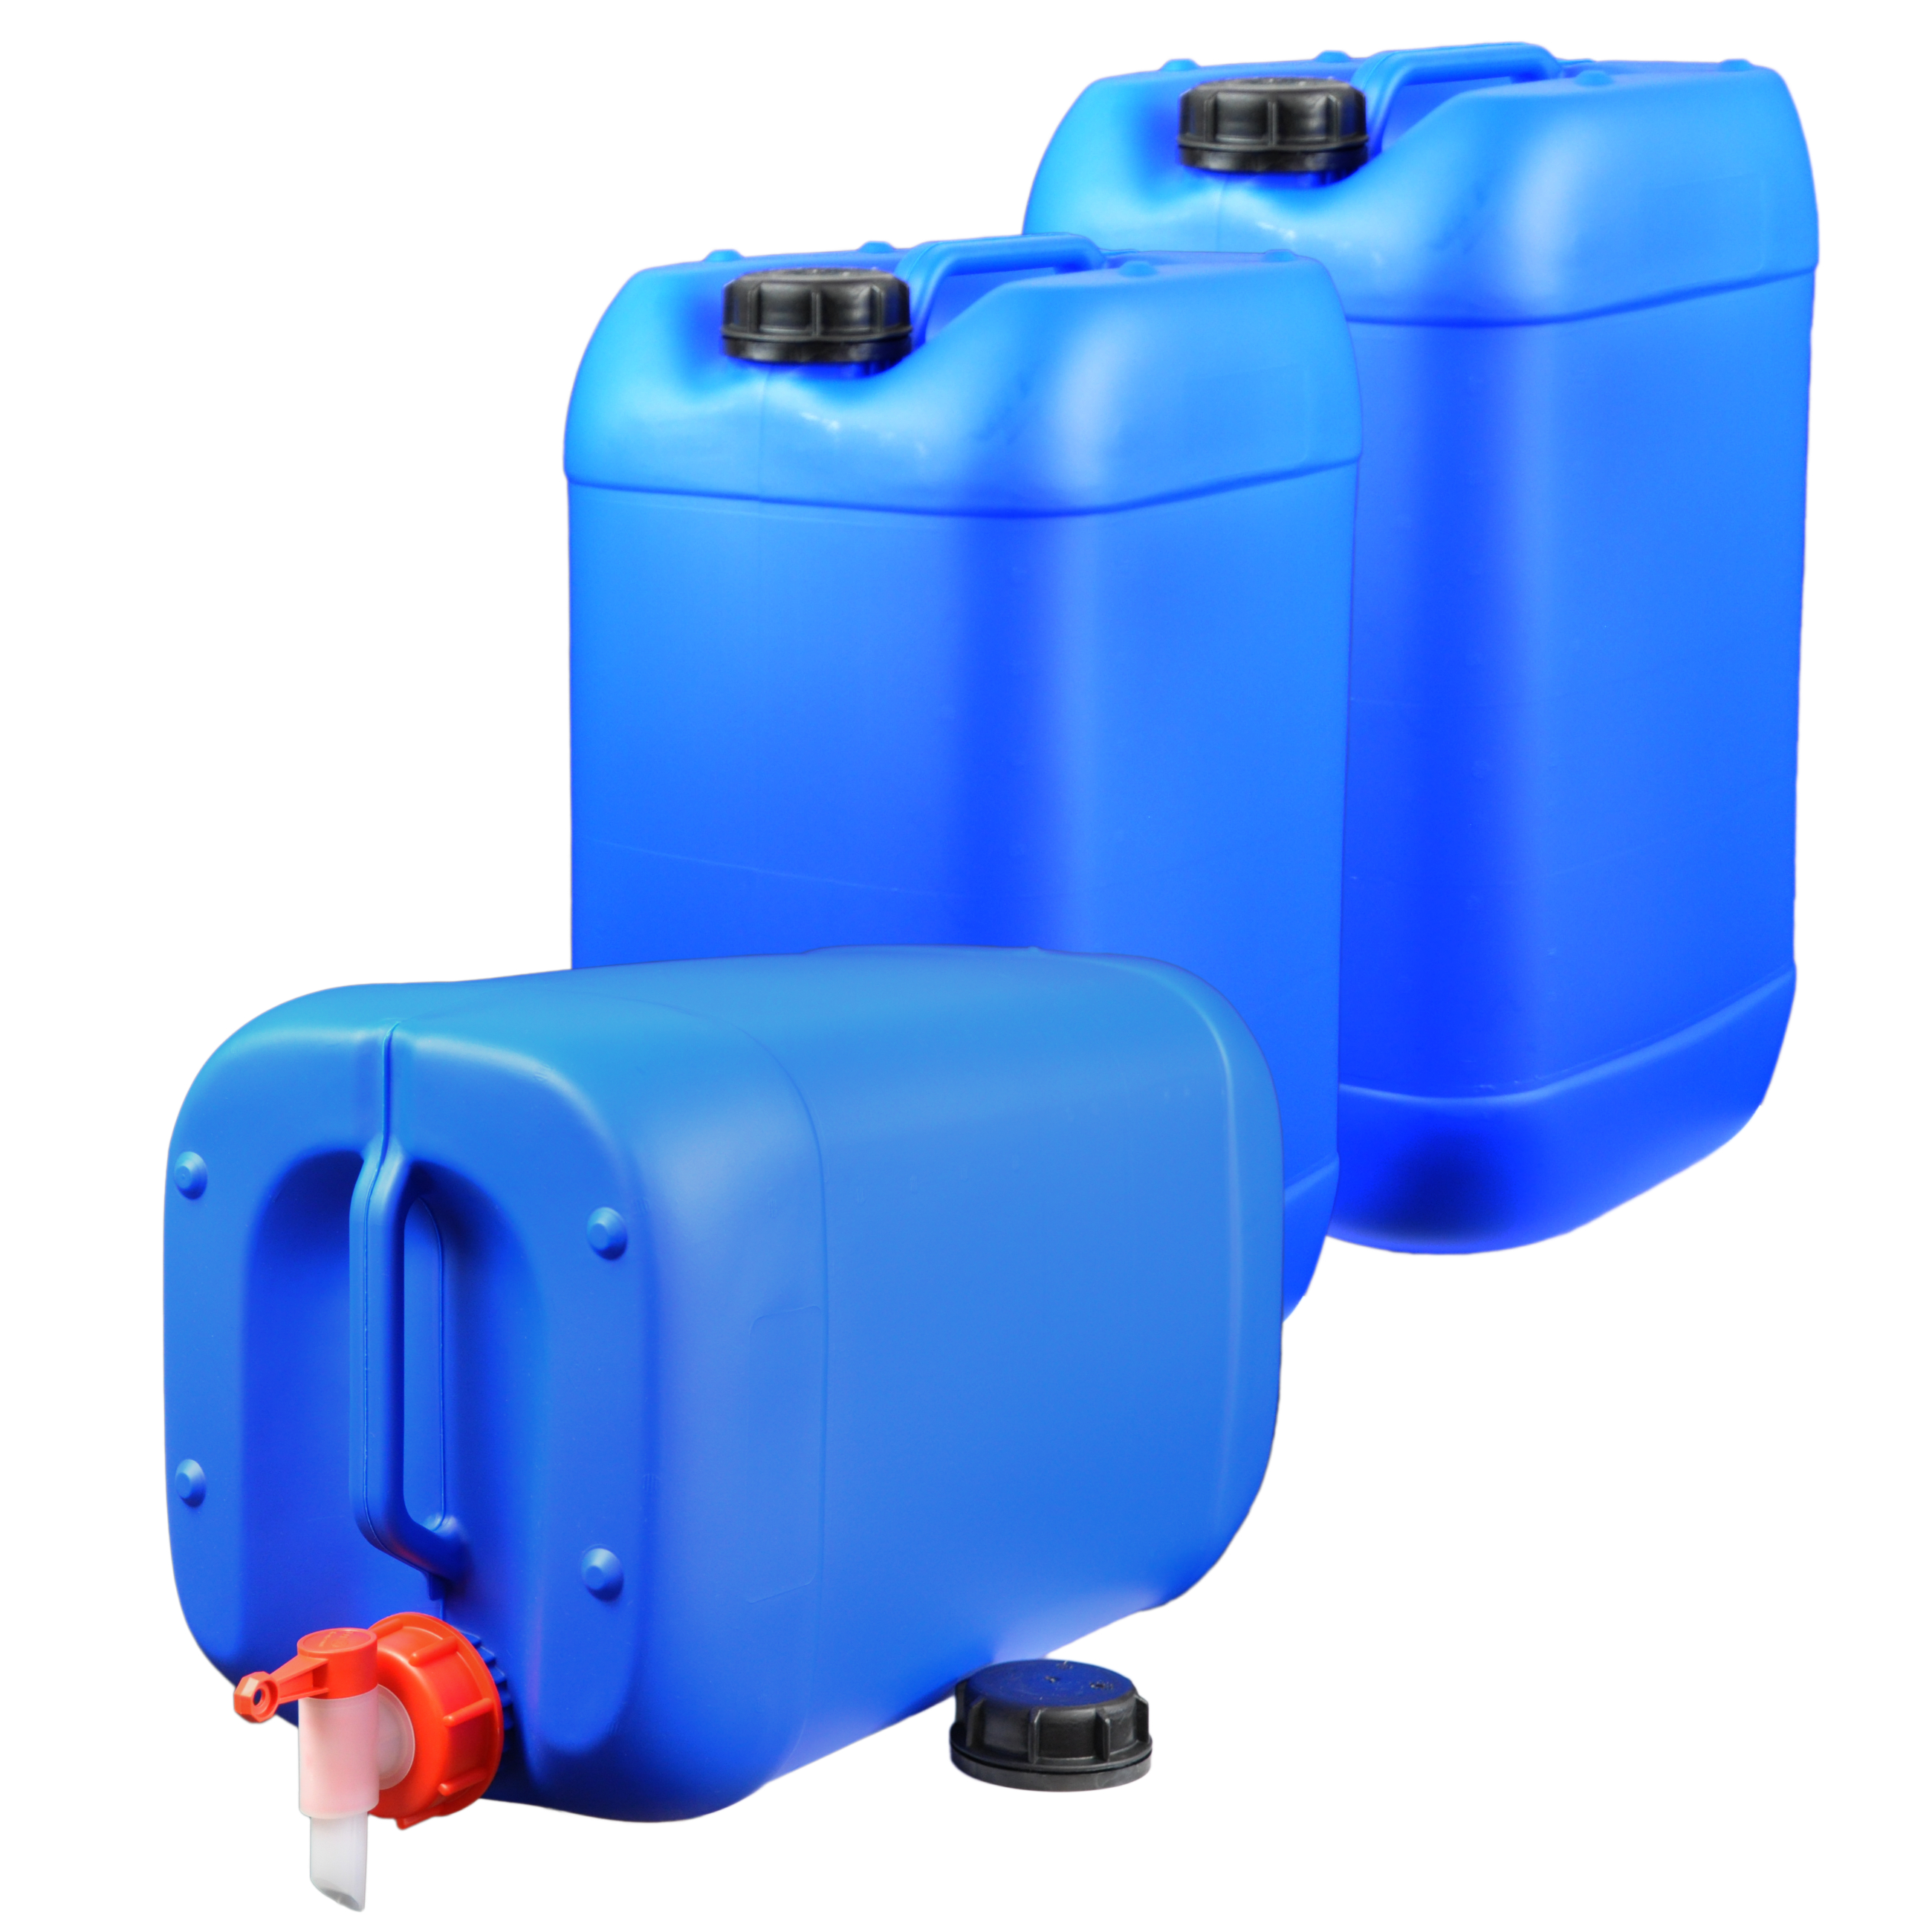 25 plasteo Liter 3X Wasserkanister Getränke-